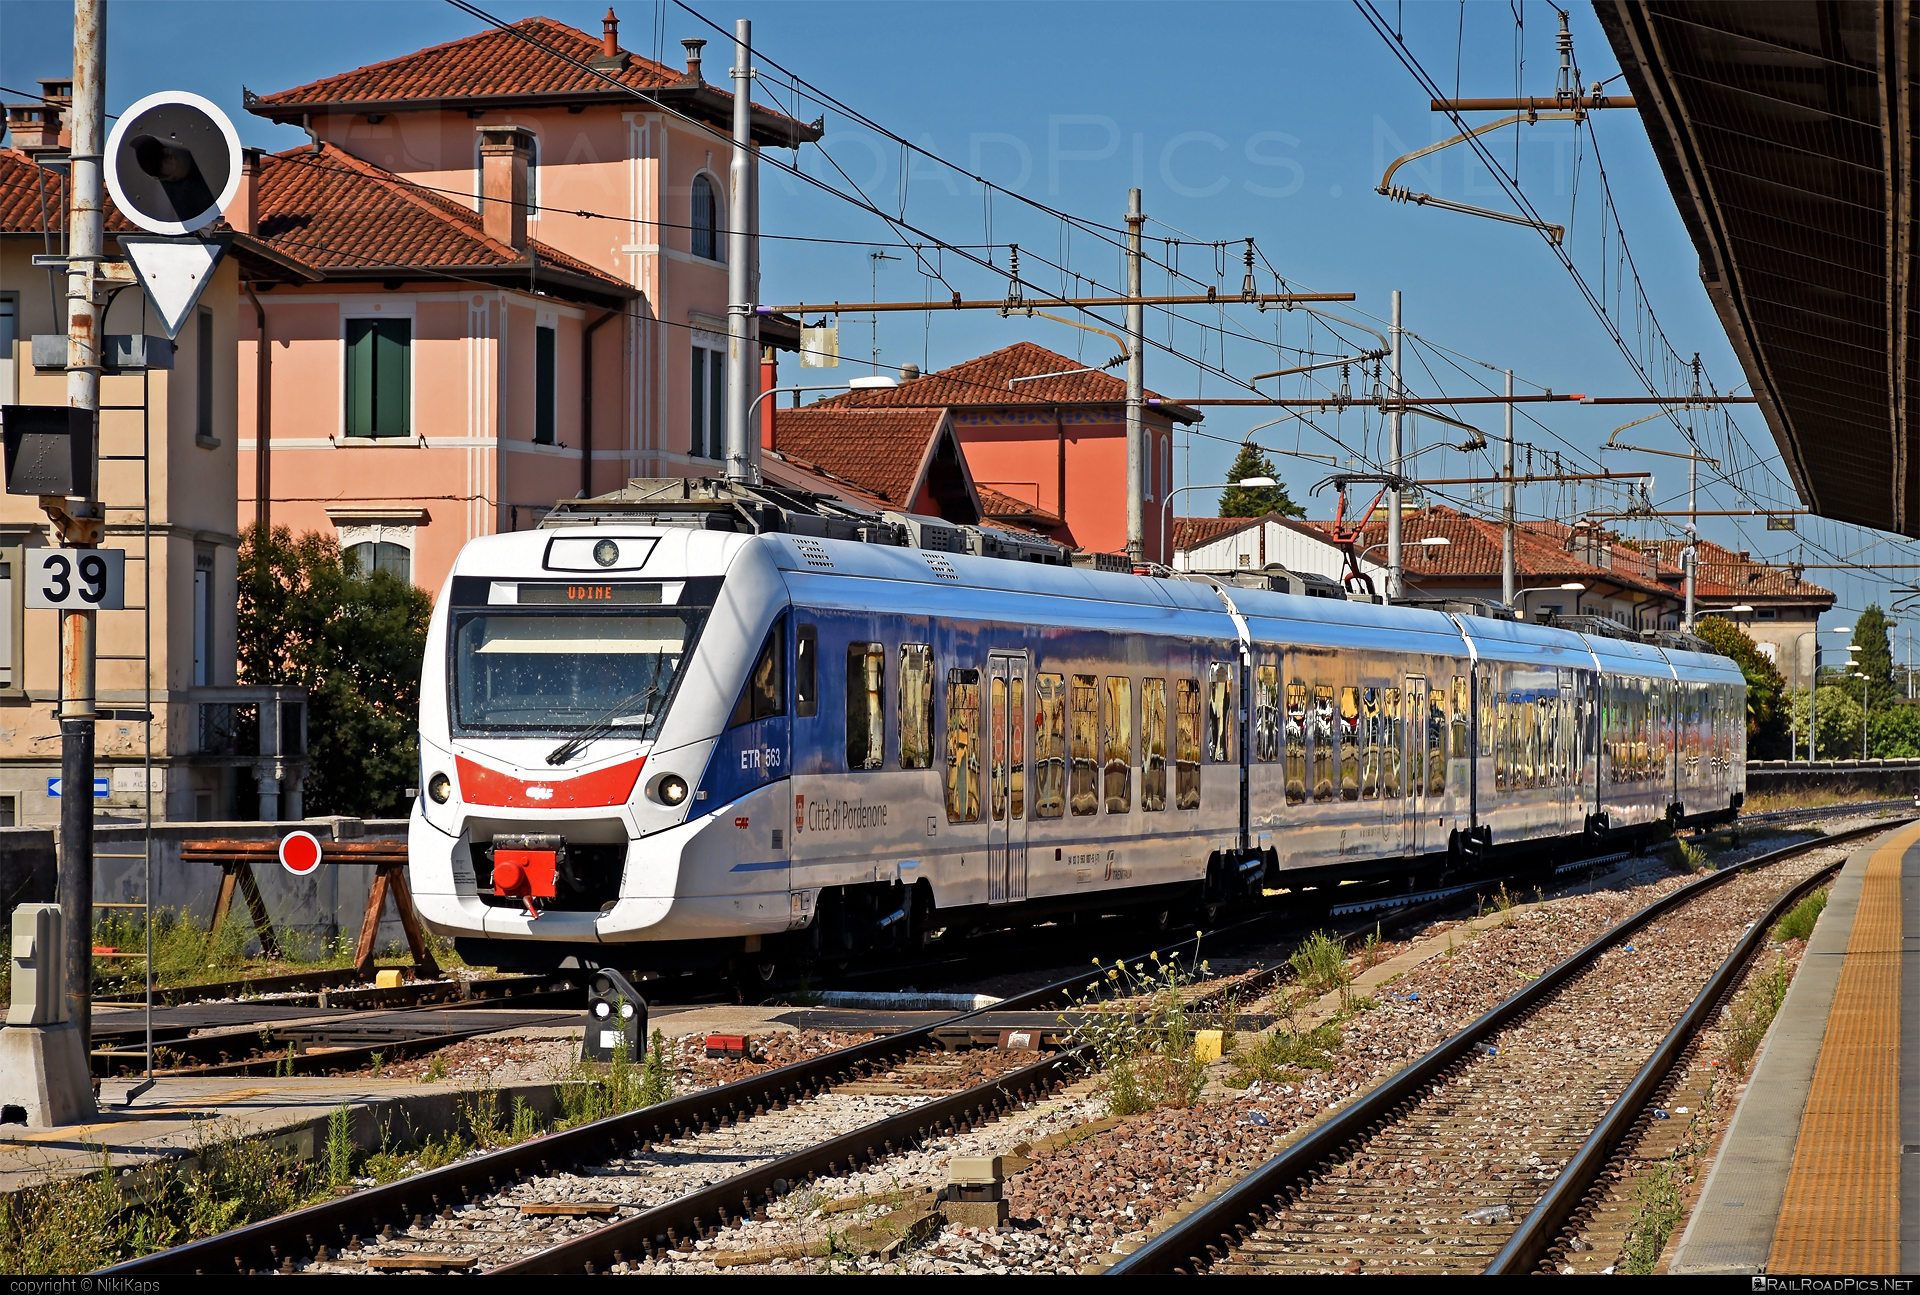 CAF Civity - 563 007-5 operated by Trenitalia S.p.A. #ConstruccionesYAuxiliarDeFerrocarriles #caf #cafCivity #civity #ferroviedellostato #fs #fsitaliane #trenitalia #trenitaliaspa